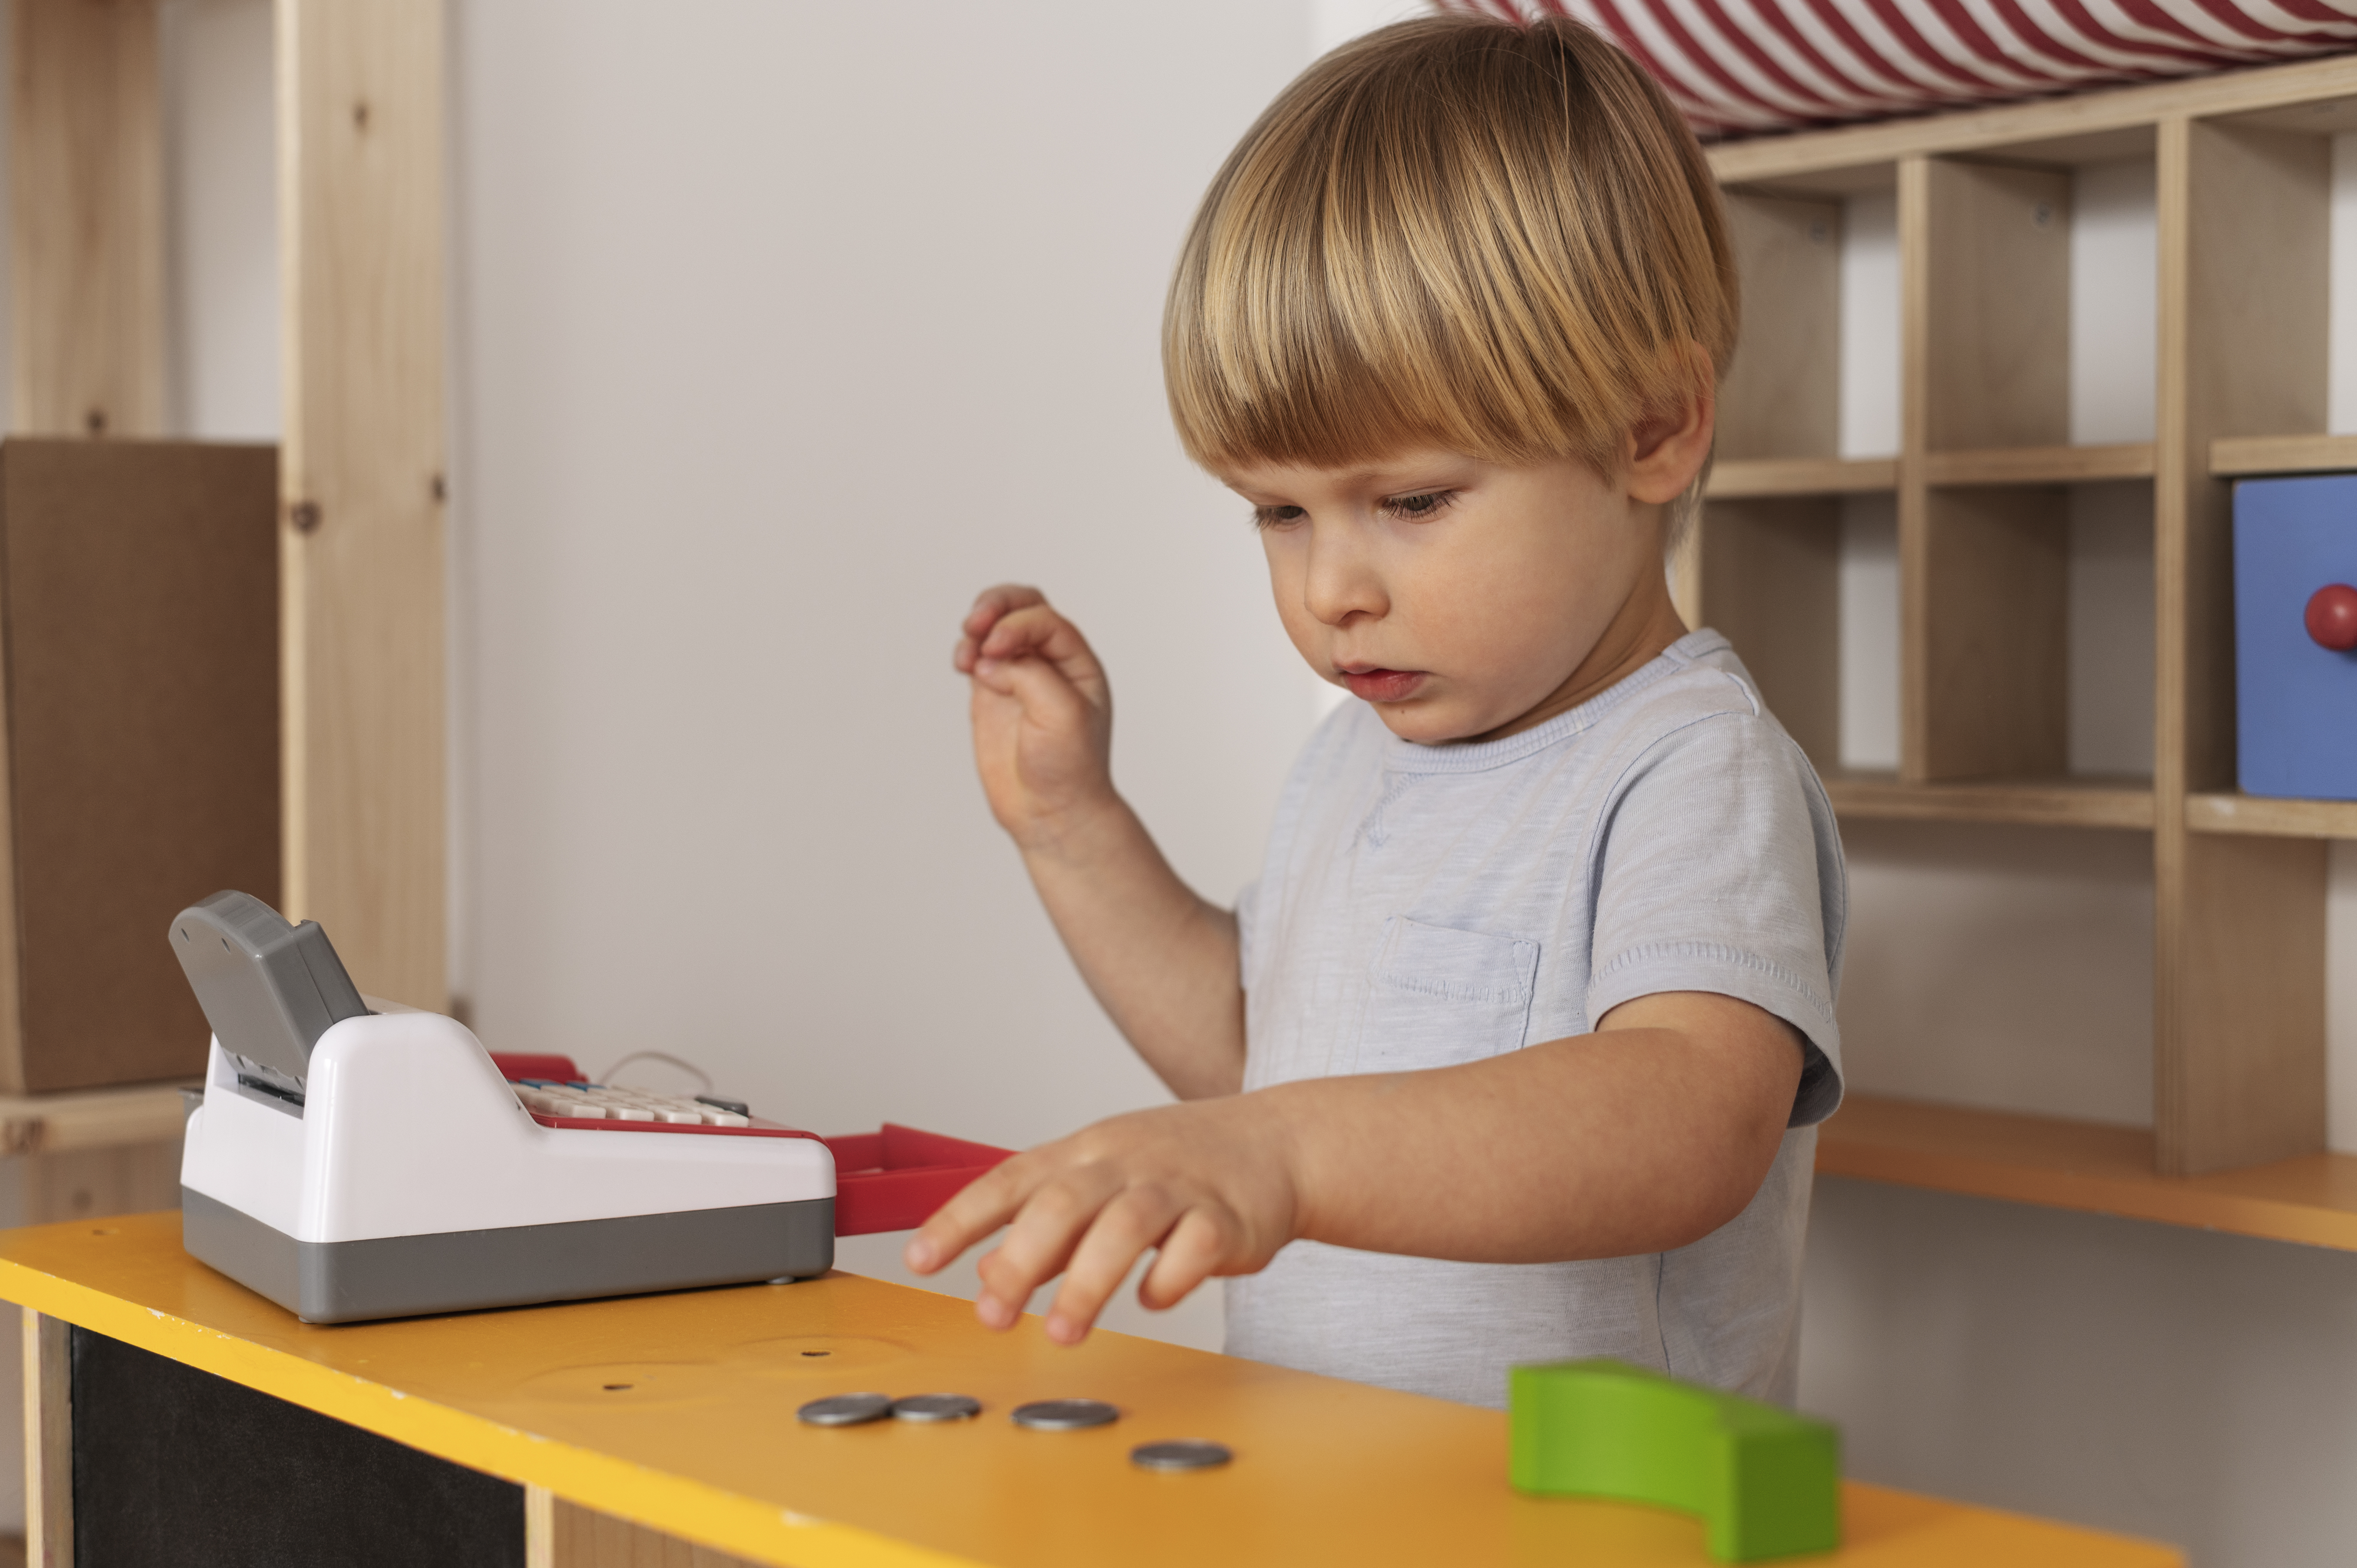 Top 5 Financial Literacy Products for Preschoolers: Help Kids Understand Money